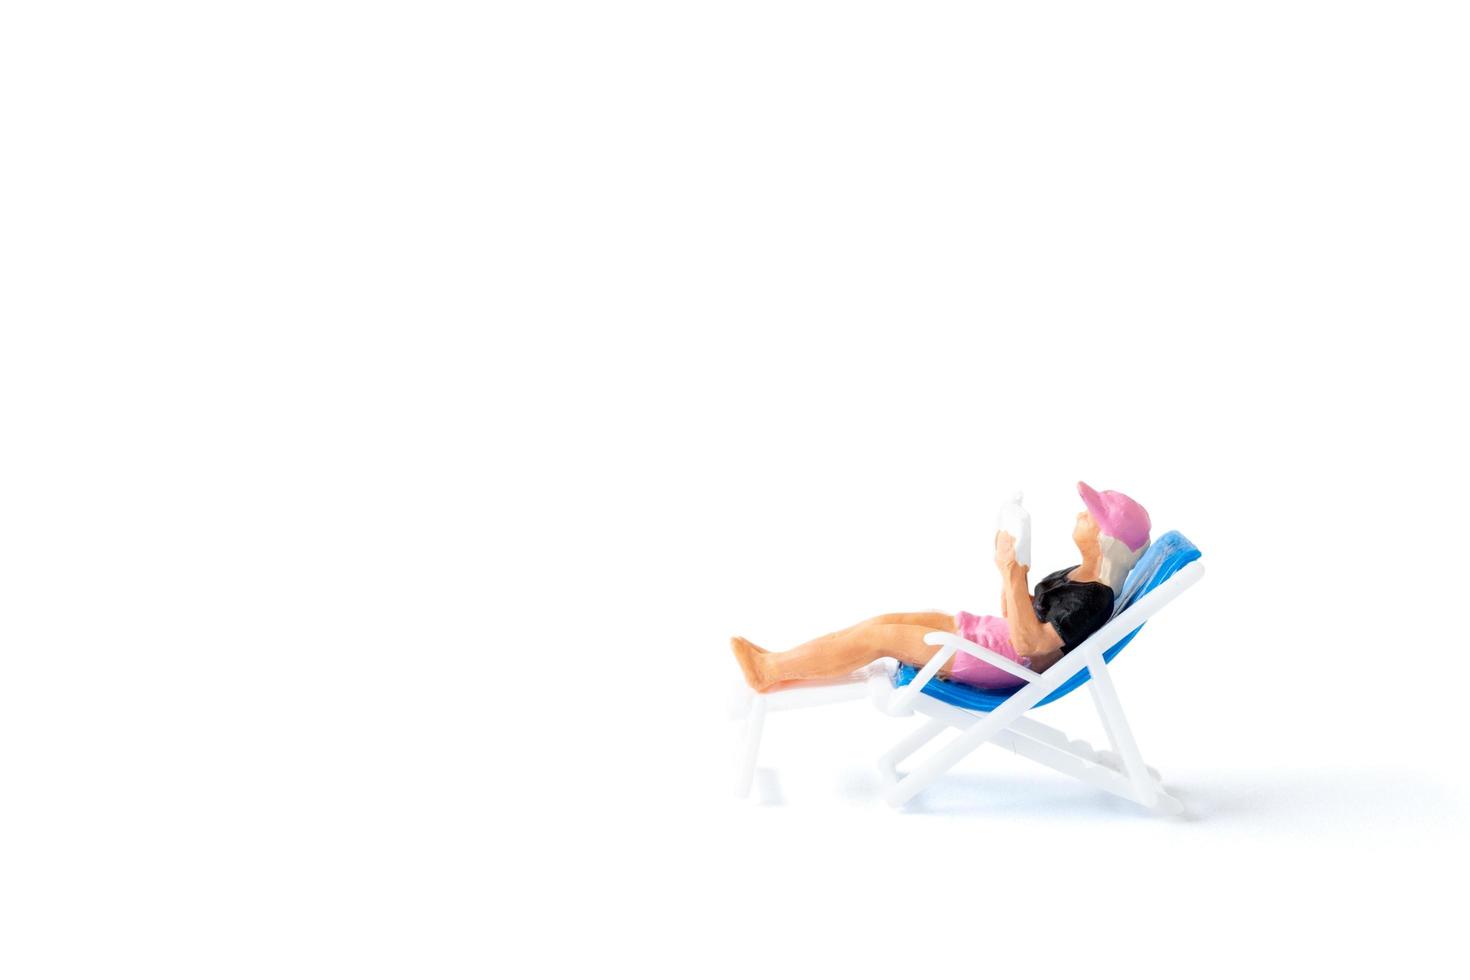 Persona en miniatura tomando el sol en una tumbona sobre un fondo blanco, concepto de verano foto